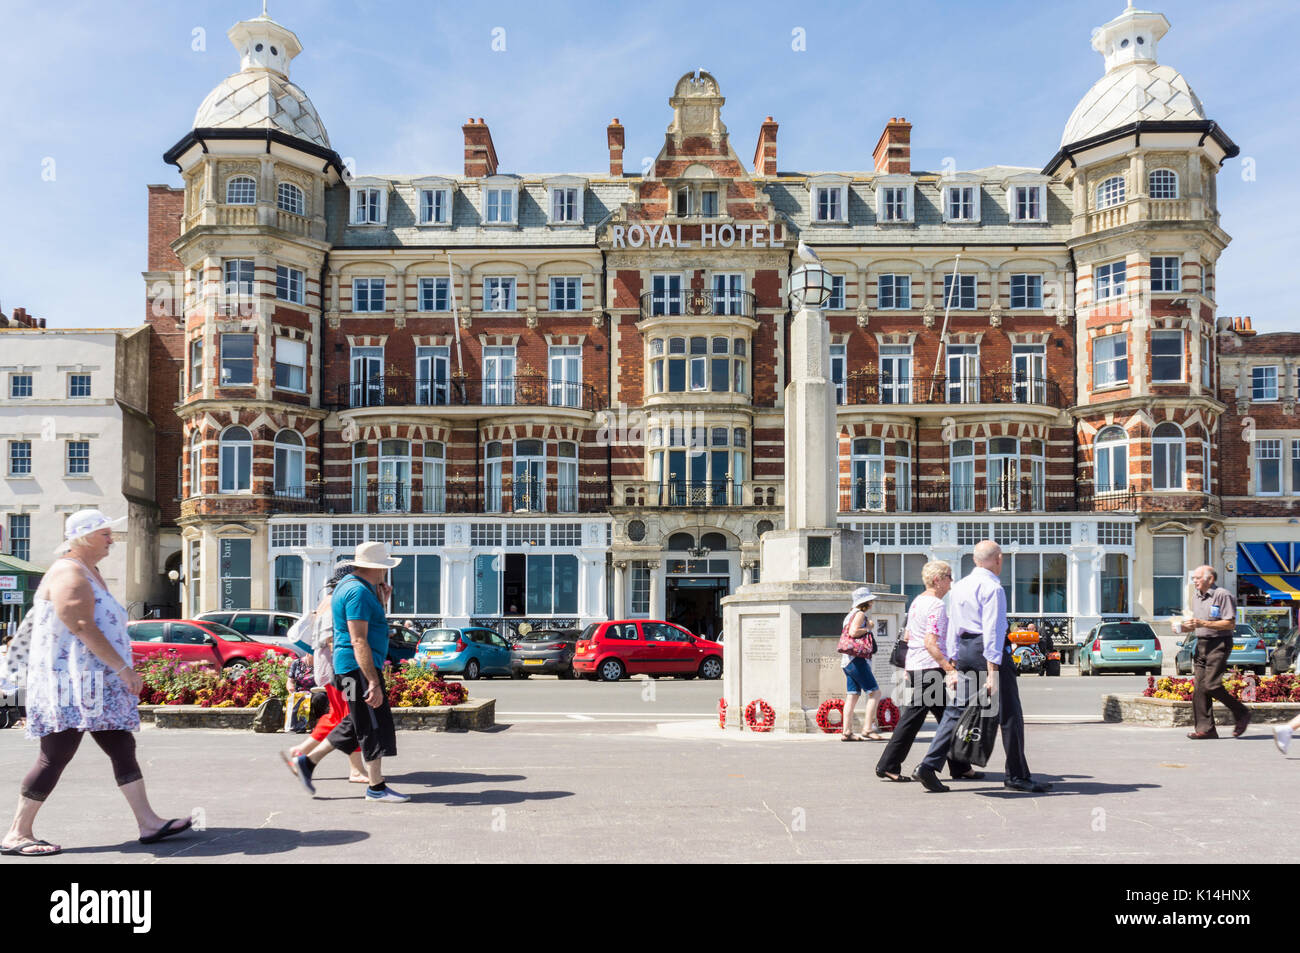 Royal Hotel à Weymouth, une ville balnéaire dans le Dorset, UK Banque D'Images